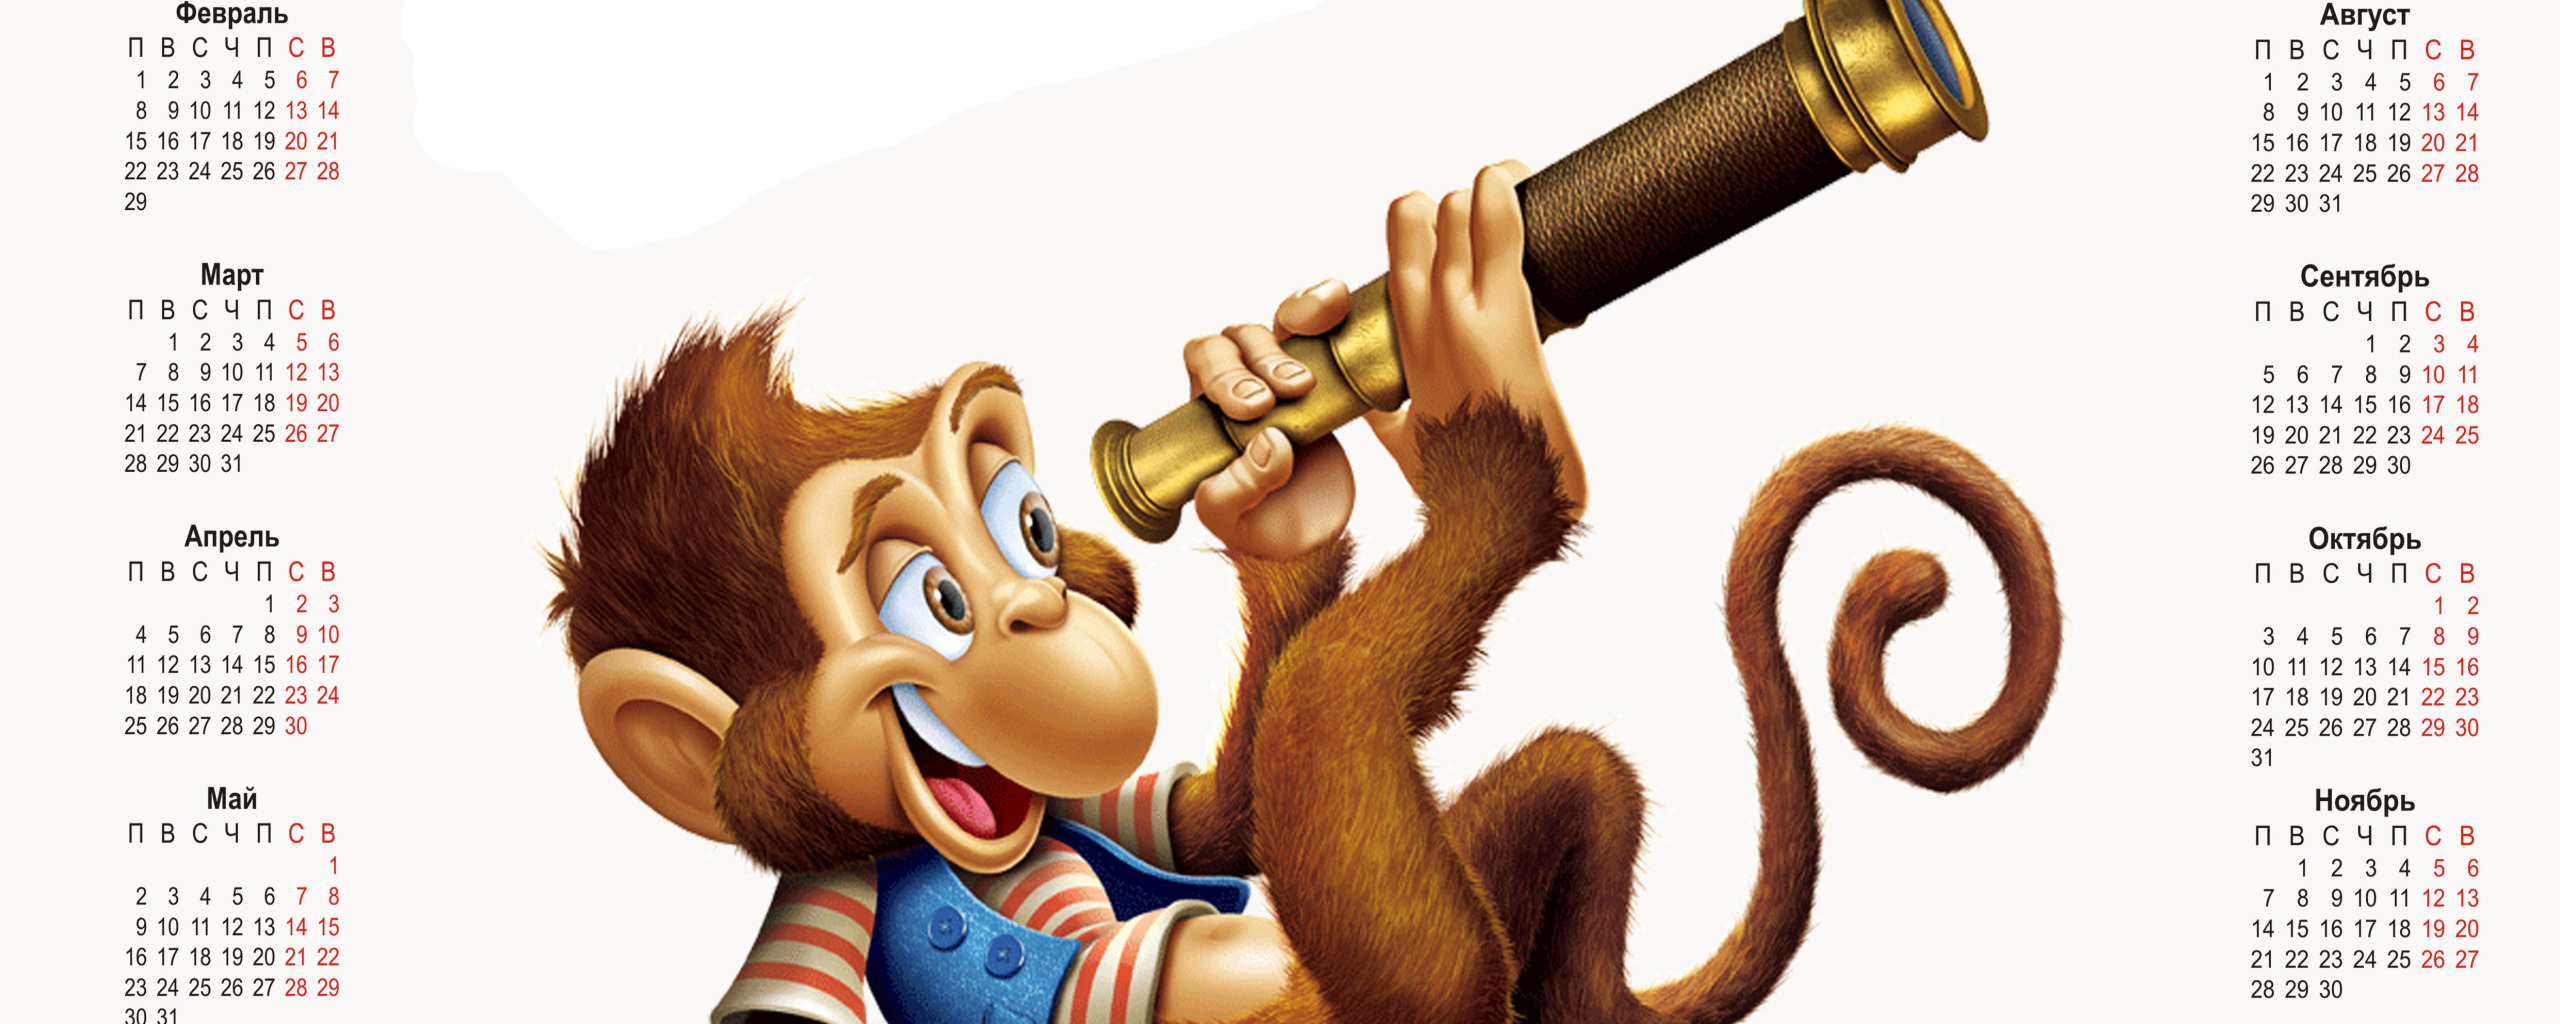 Календарь с обезьяной. Календарь с обезьянами 2016. Год обезьяны 2028. Обезьяна новый год.